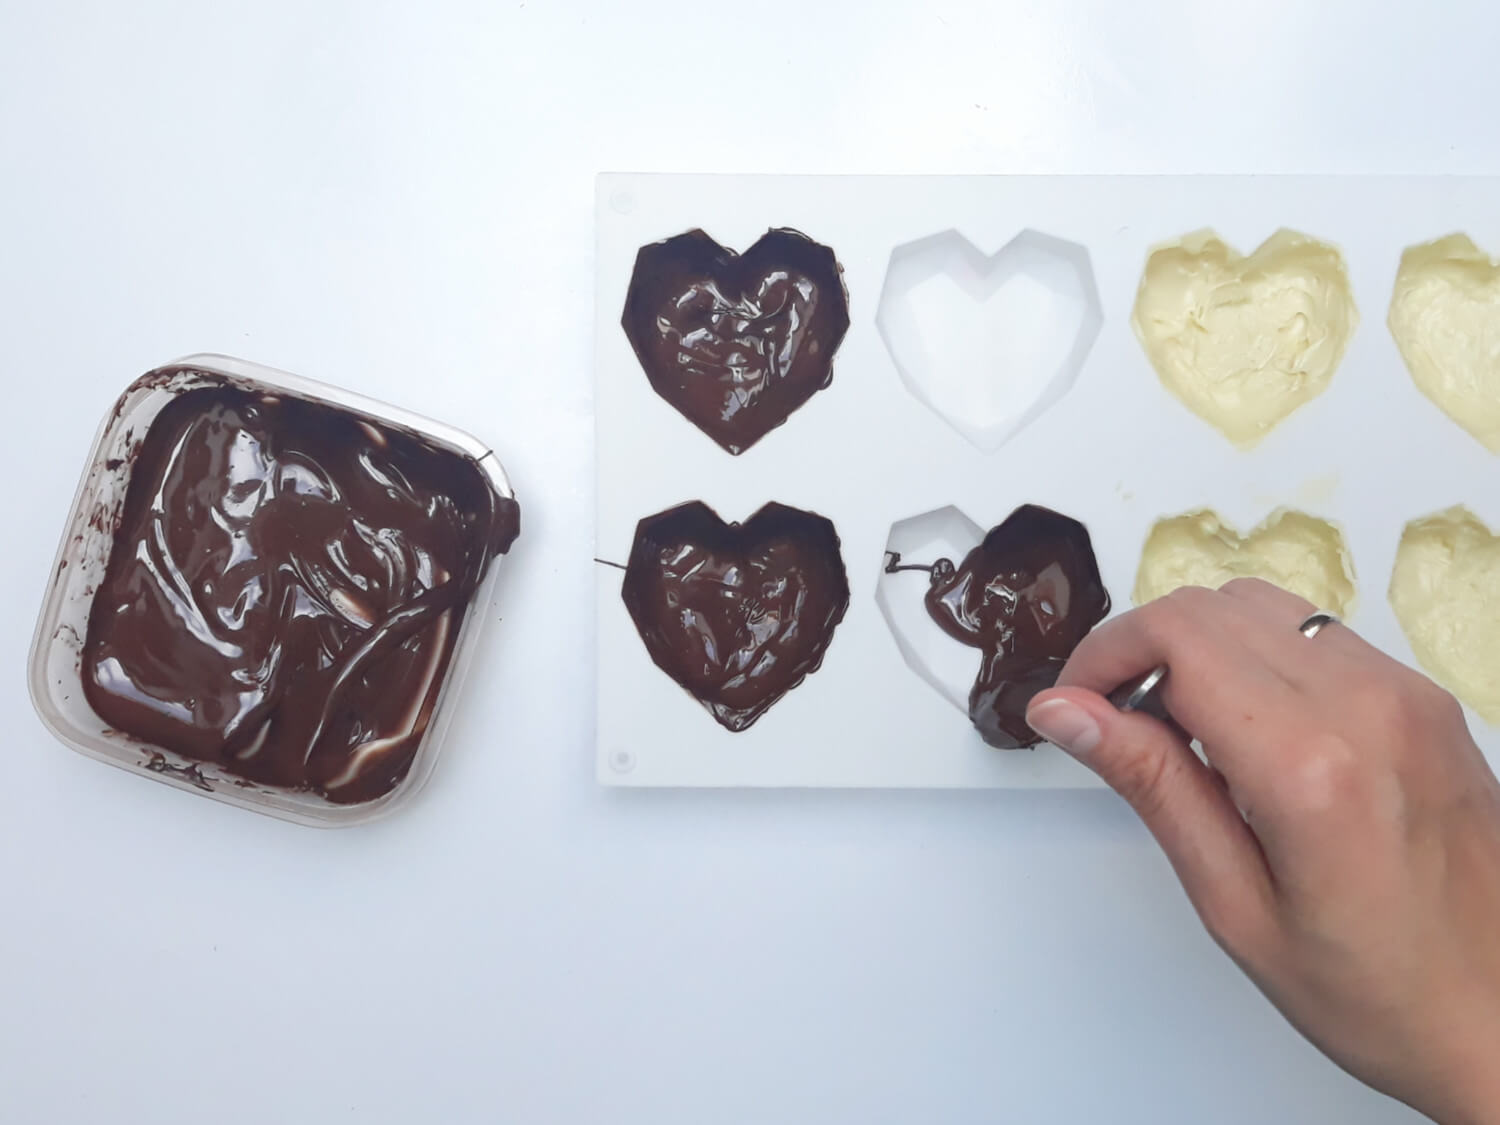 przygotowanie monoporcji w temperowanej czekoladzie, wypełnianie temperowaną białą czekoladą formy silikonowej w kształcie geometrycznych serc